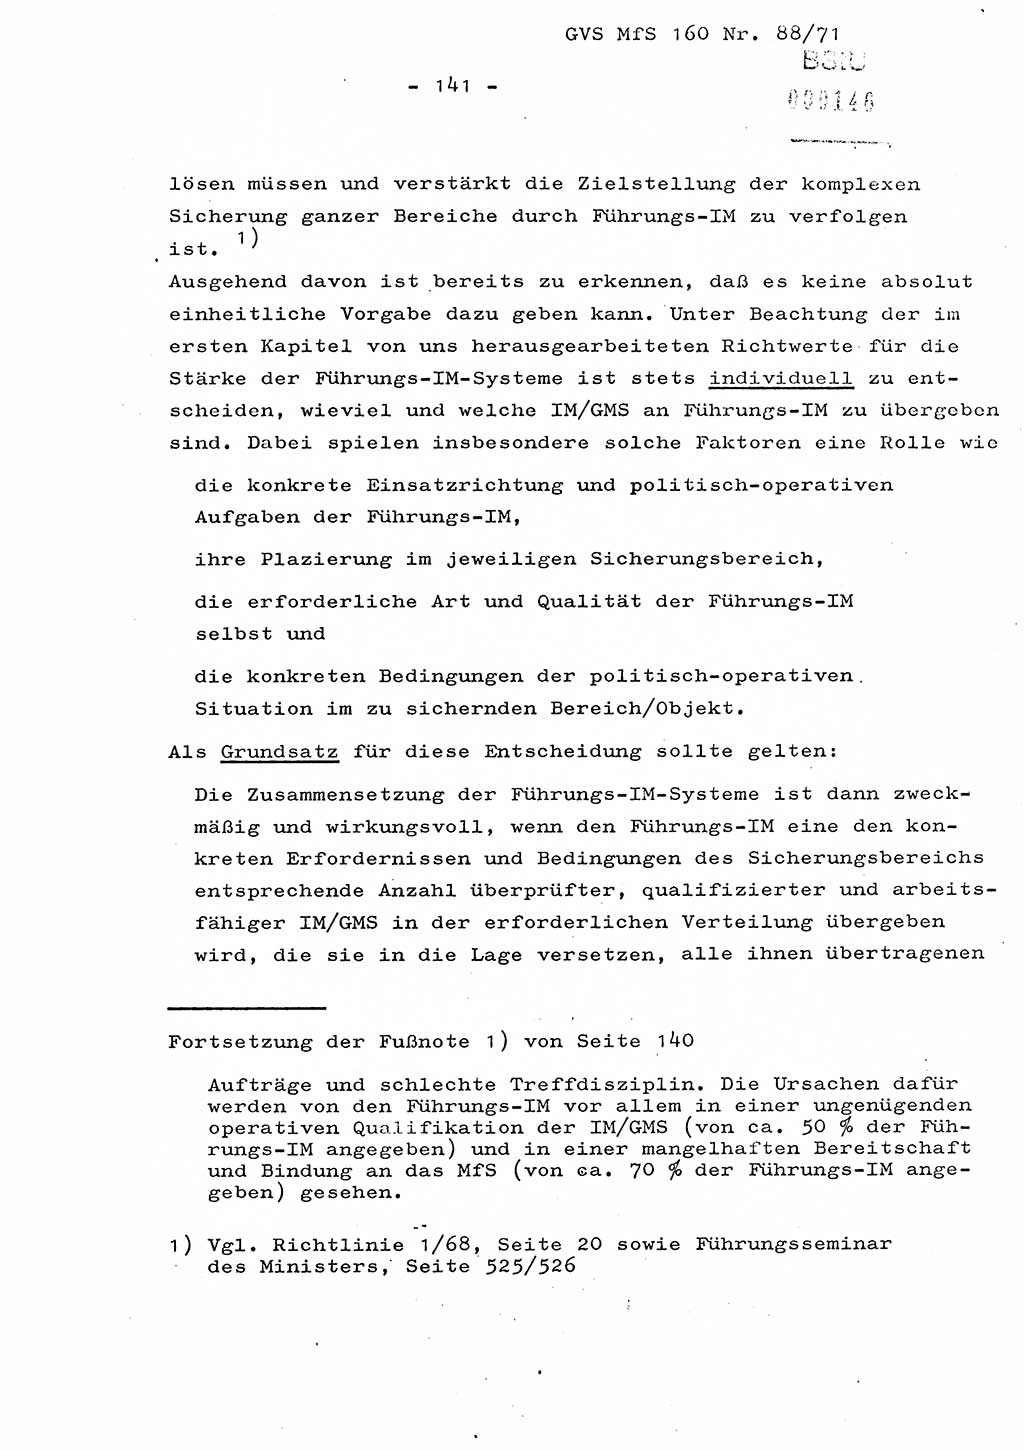 Dissertation Oberstleutnant Josef Schwarz (BV Schwerin), Major Fritz Amm (JHS), Hauptmann Peter Gräßler (JHS), Ministerium für Staatssicherheit (MfS) [Deutsche Demokratische Republik (DDR)], Juristische Hochschule (JHS), Geheime Verschlußsache (GVS) 160-88/71, Potsdam 1972, Seite 141 (Diss. MfS DDR JHS GVS 160-88/71 1972, S. 141)